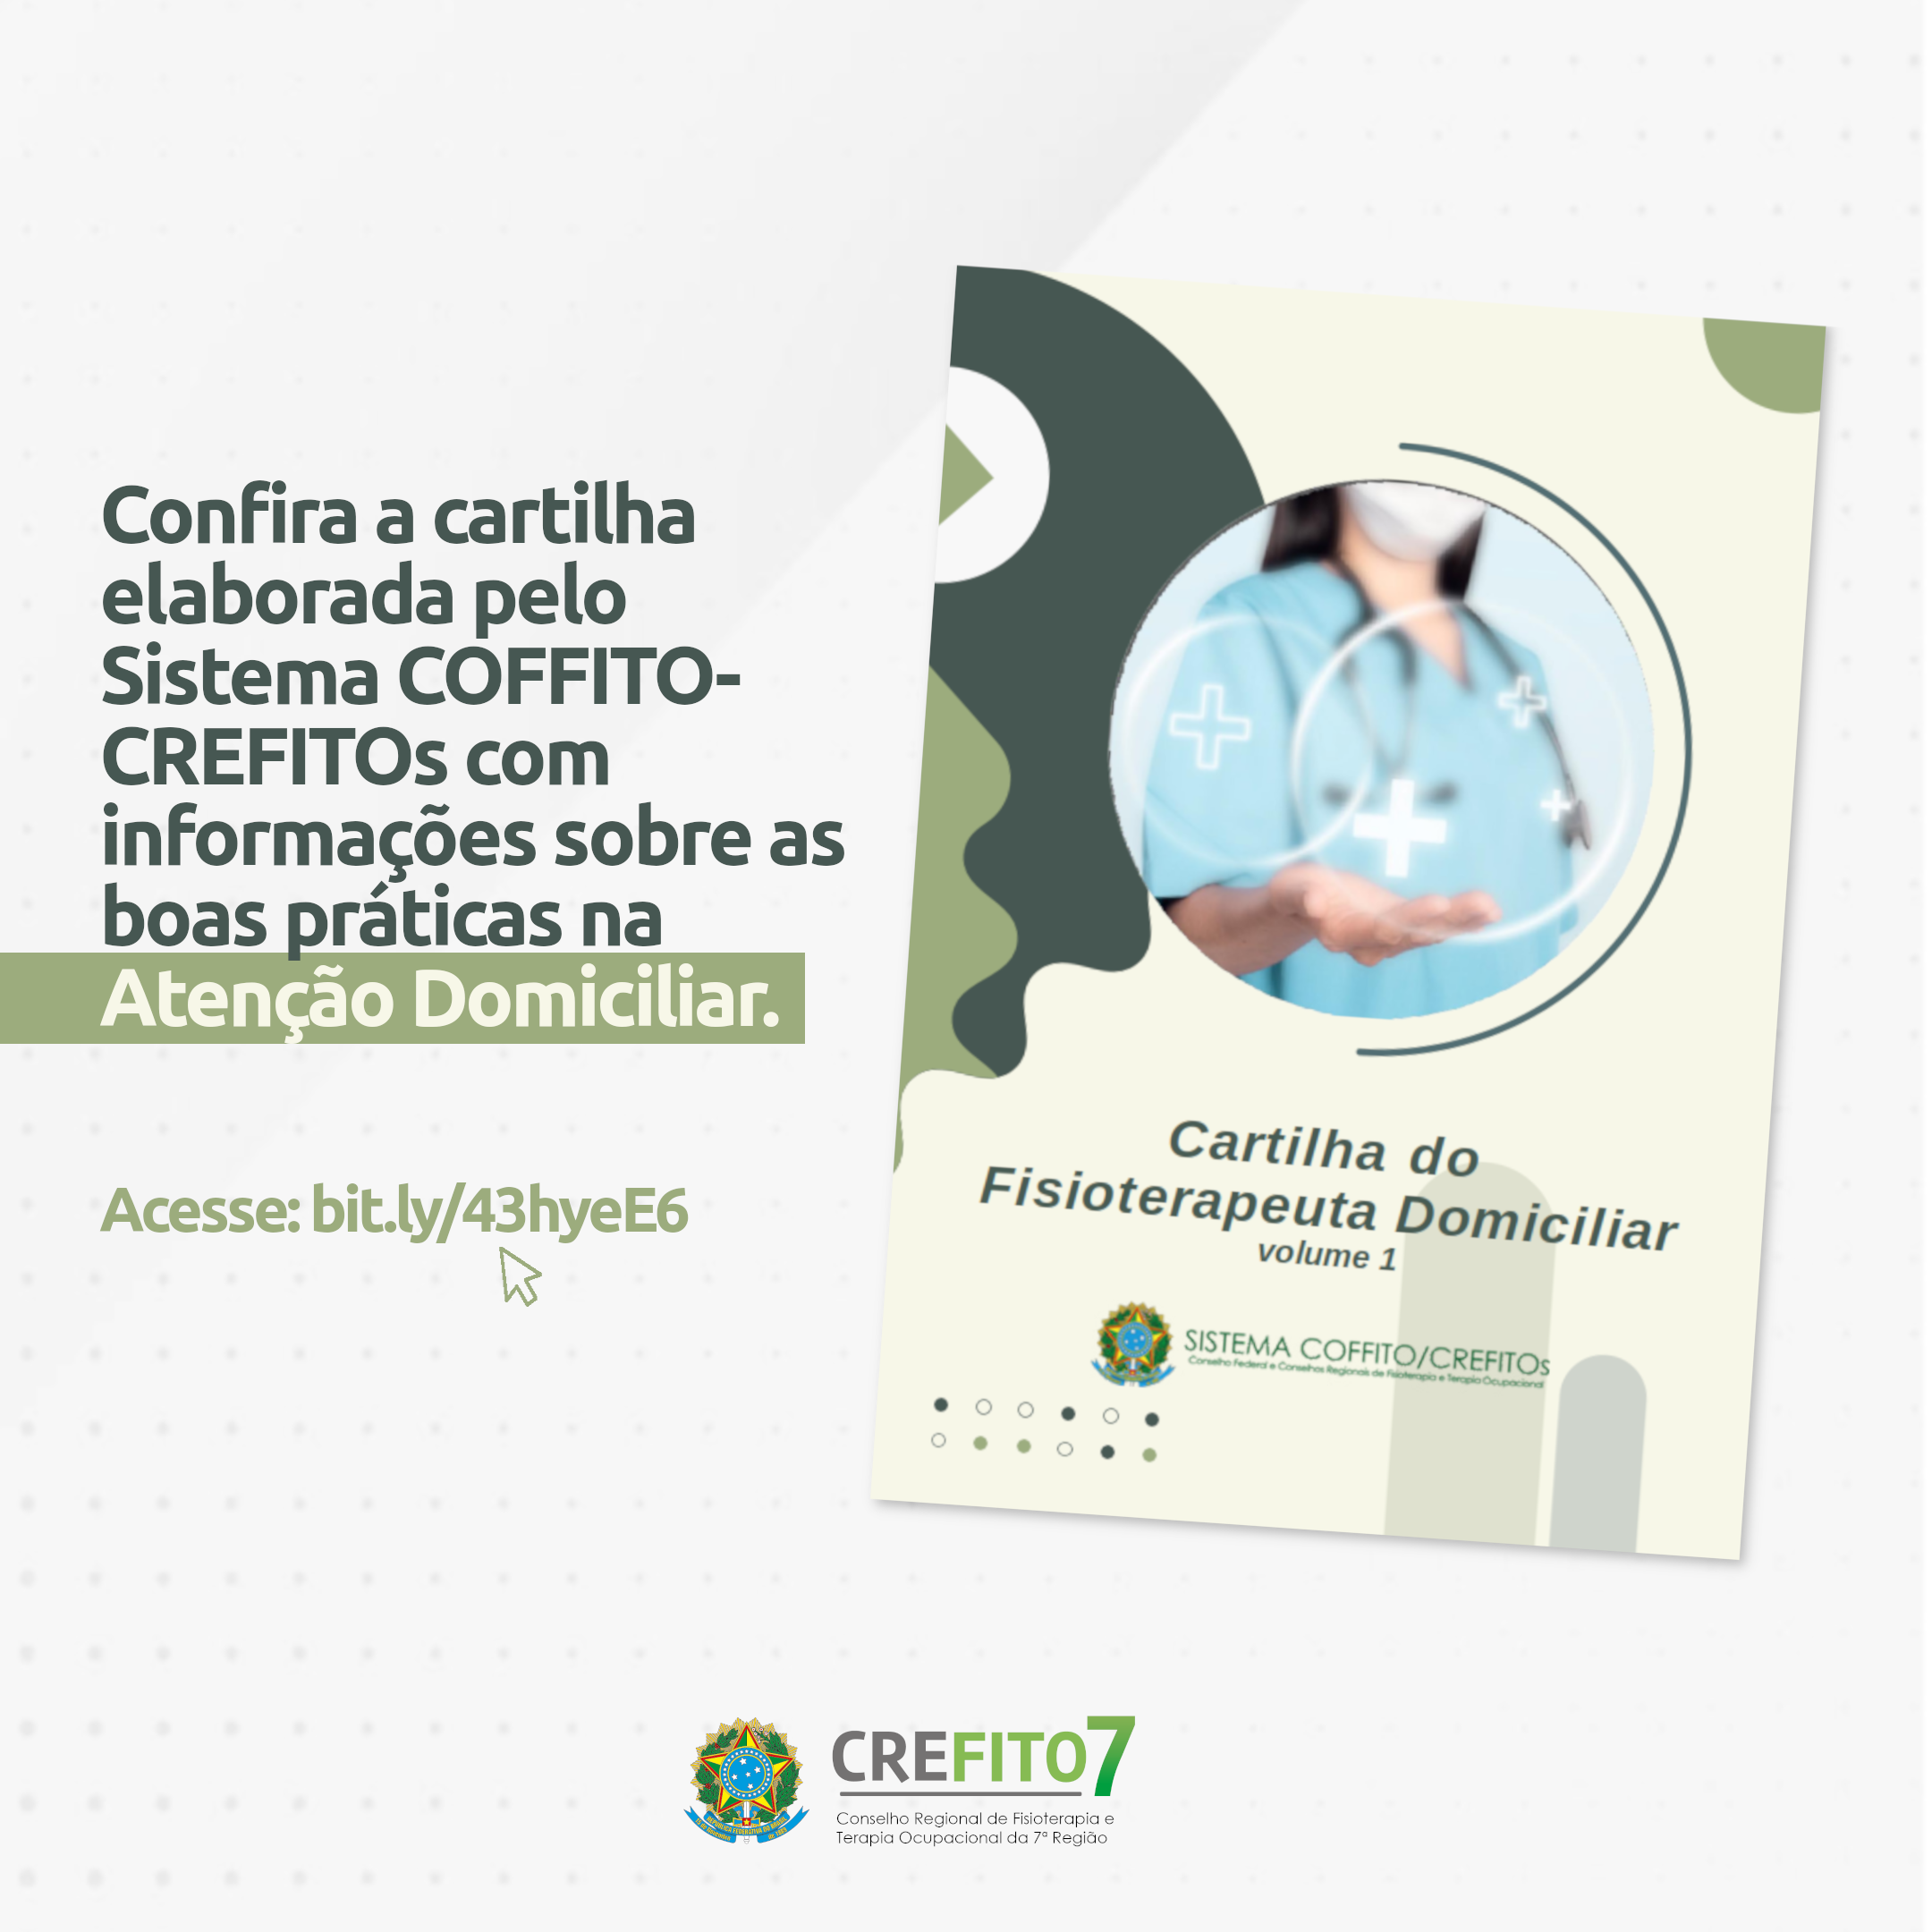 Confira a cartilha elaborada pelo Sistema COFFITO-CREFITOs com informações sobre as boas práticas na Atenção Domiciliar!